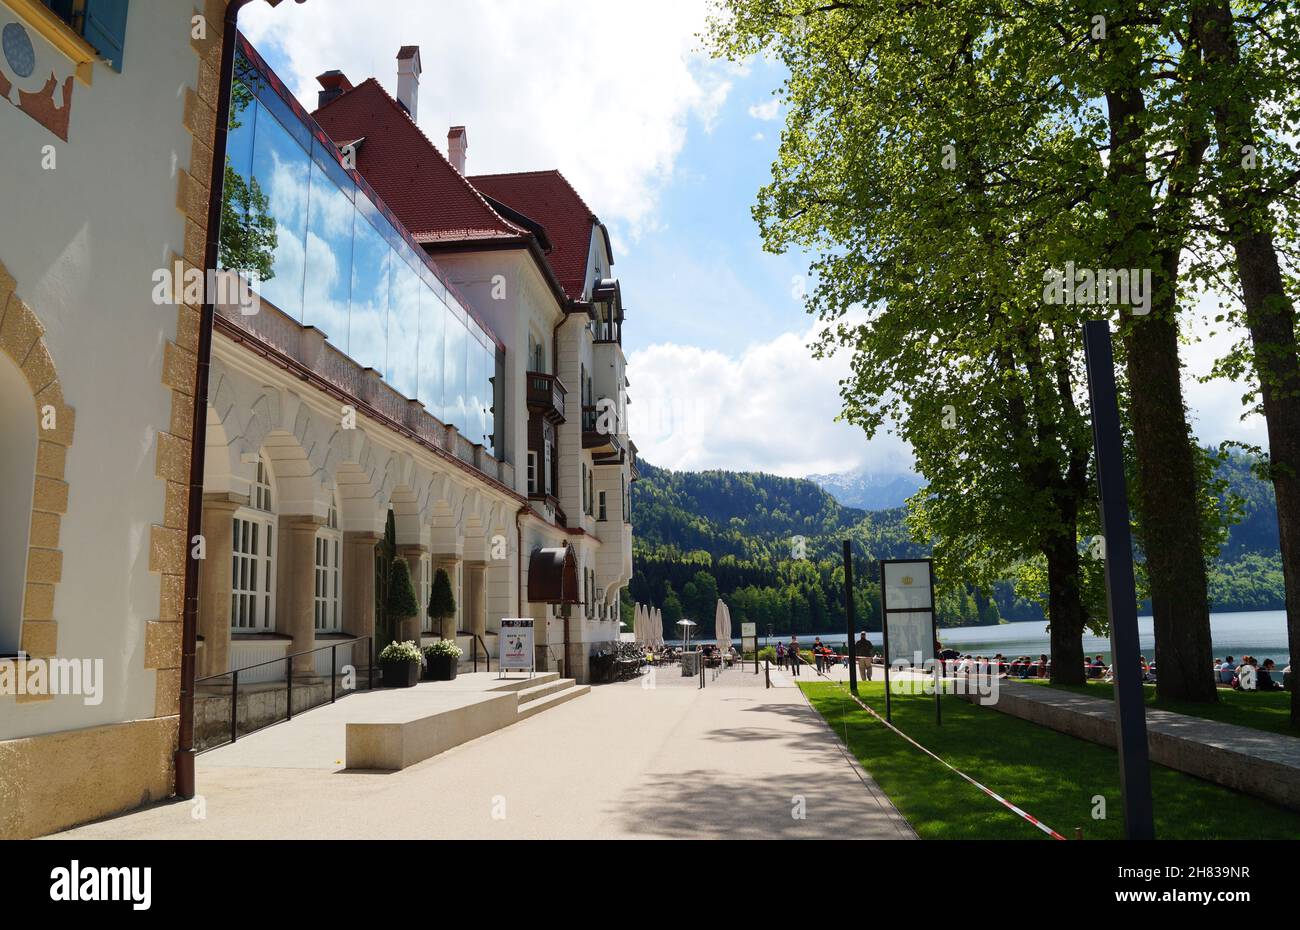 Das Museum der Bayerischen Könige in Hohenschwangau in den malerischen bayerischen Alpen am wunderschönen Alpsee in Allgäu, Bayern, Deutschland Stockfoto